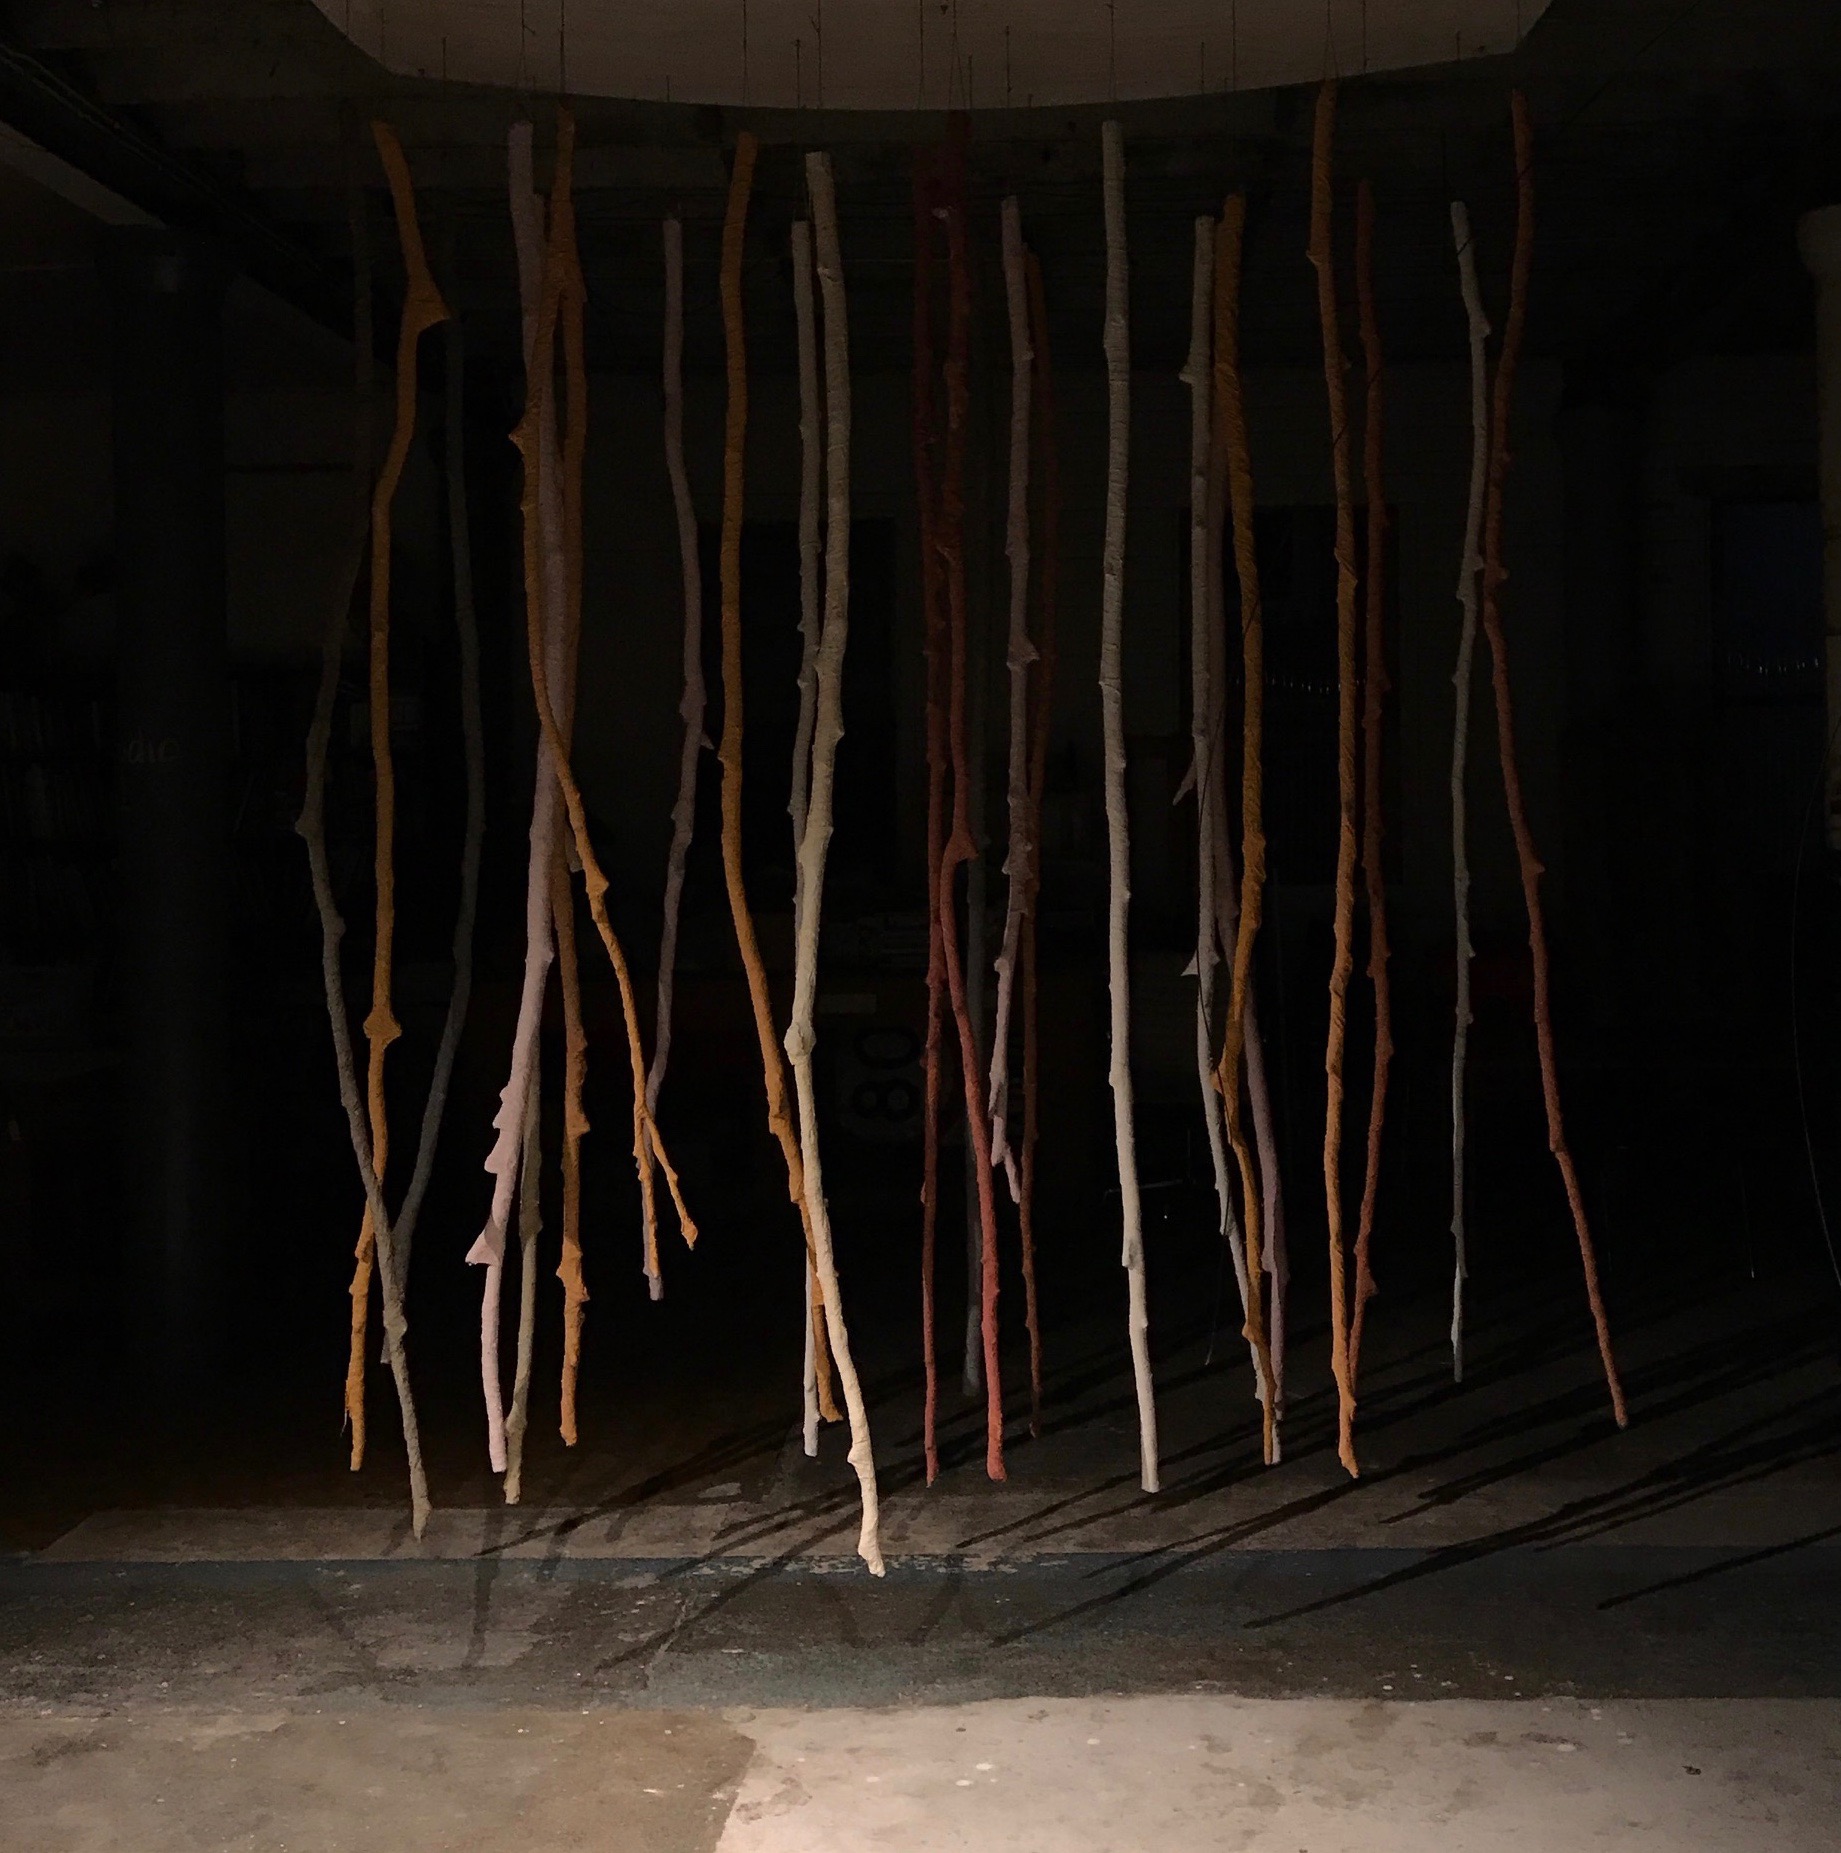 Hanging sticks at night